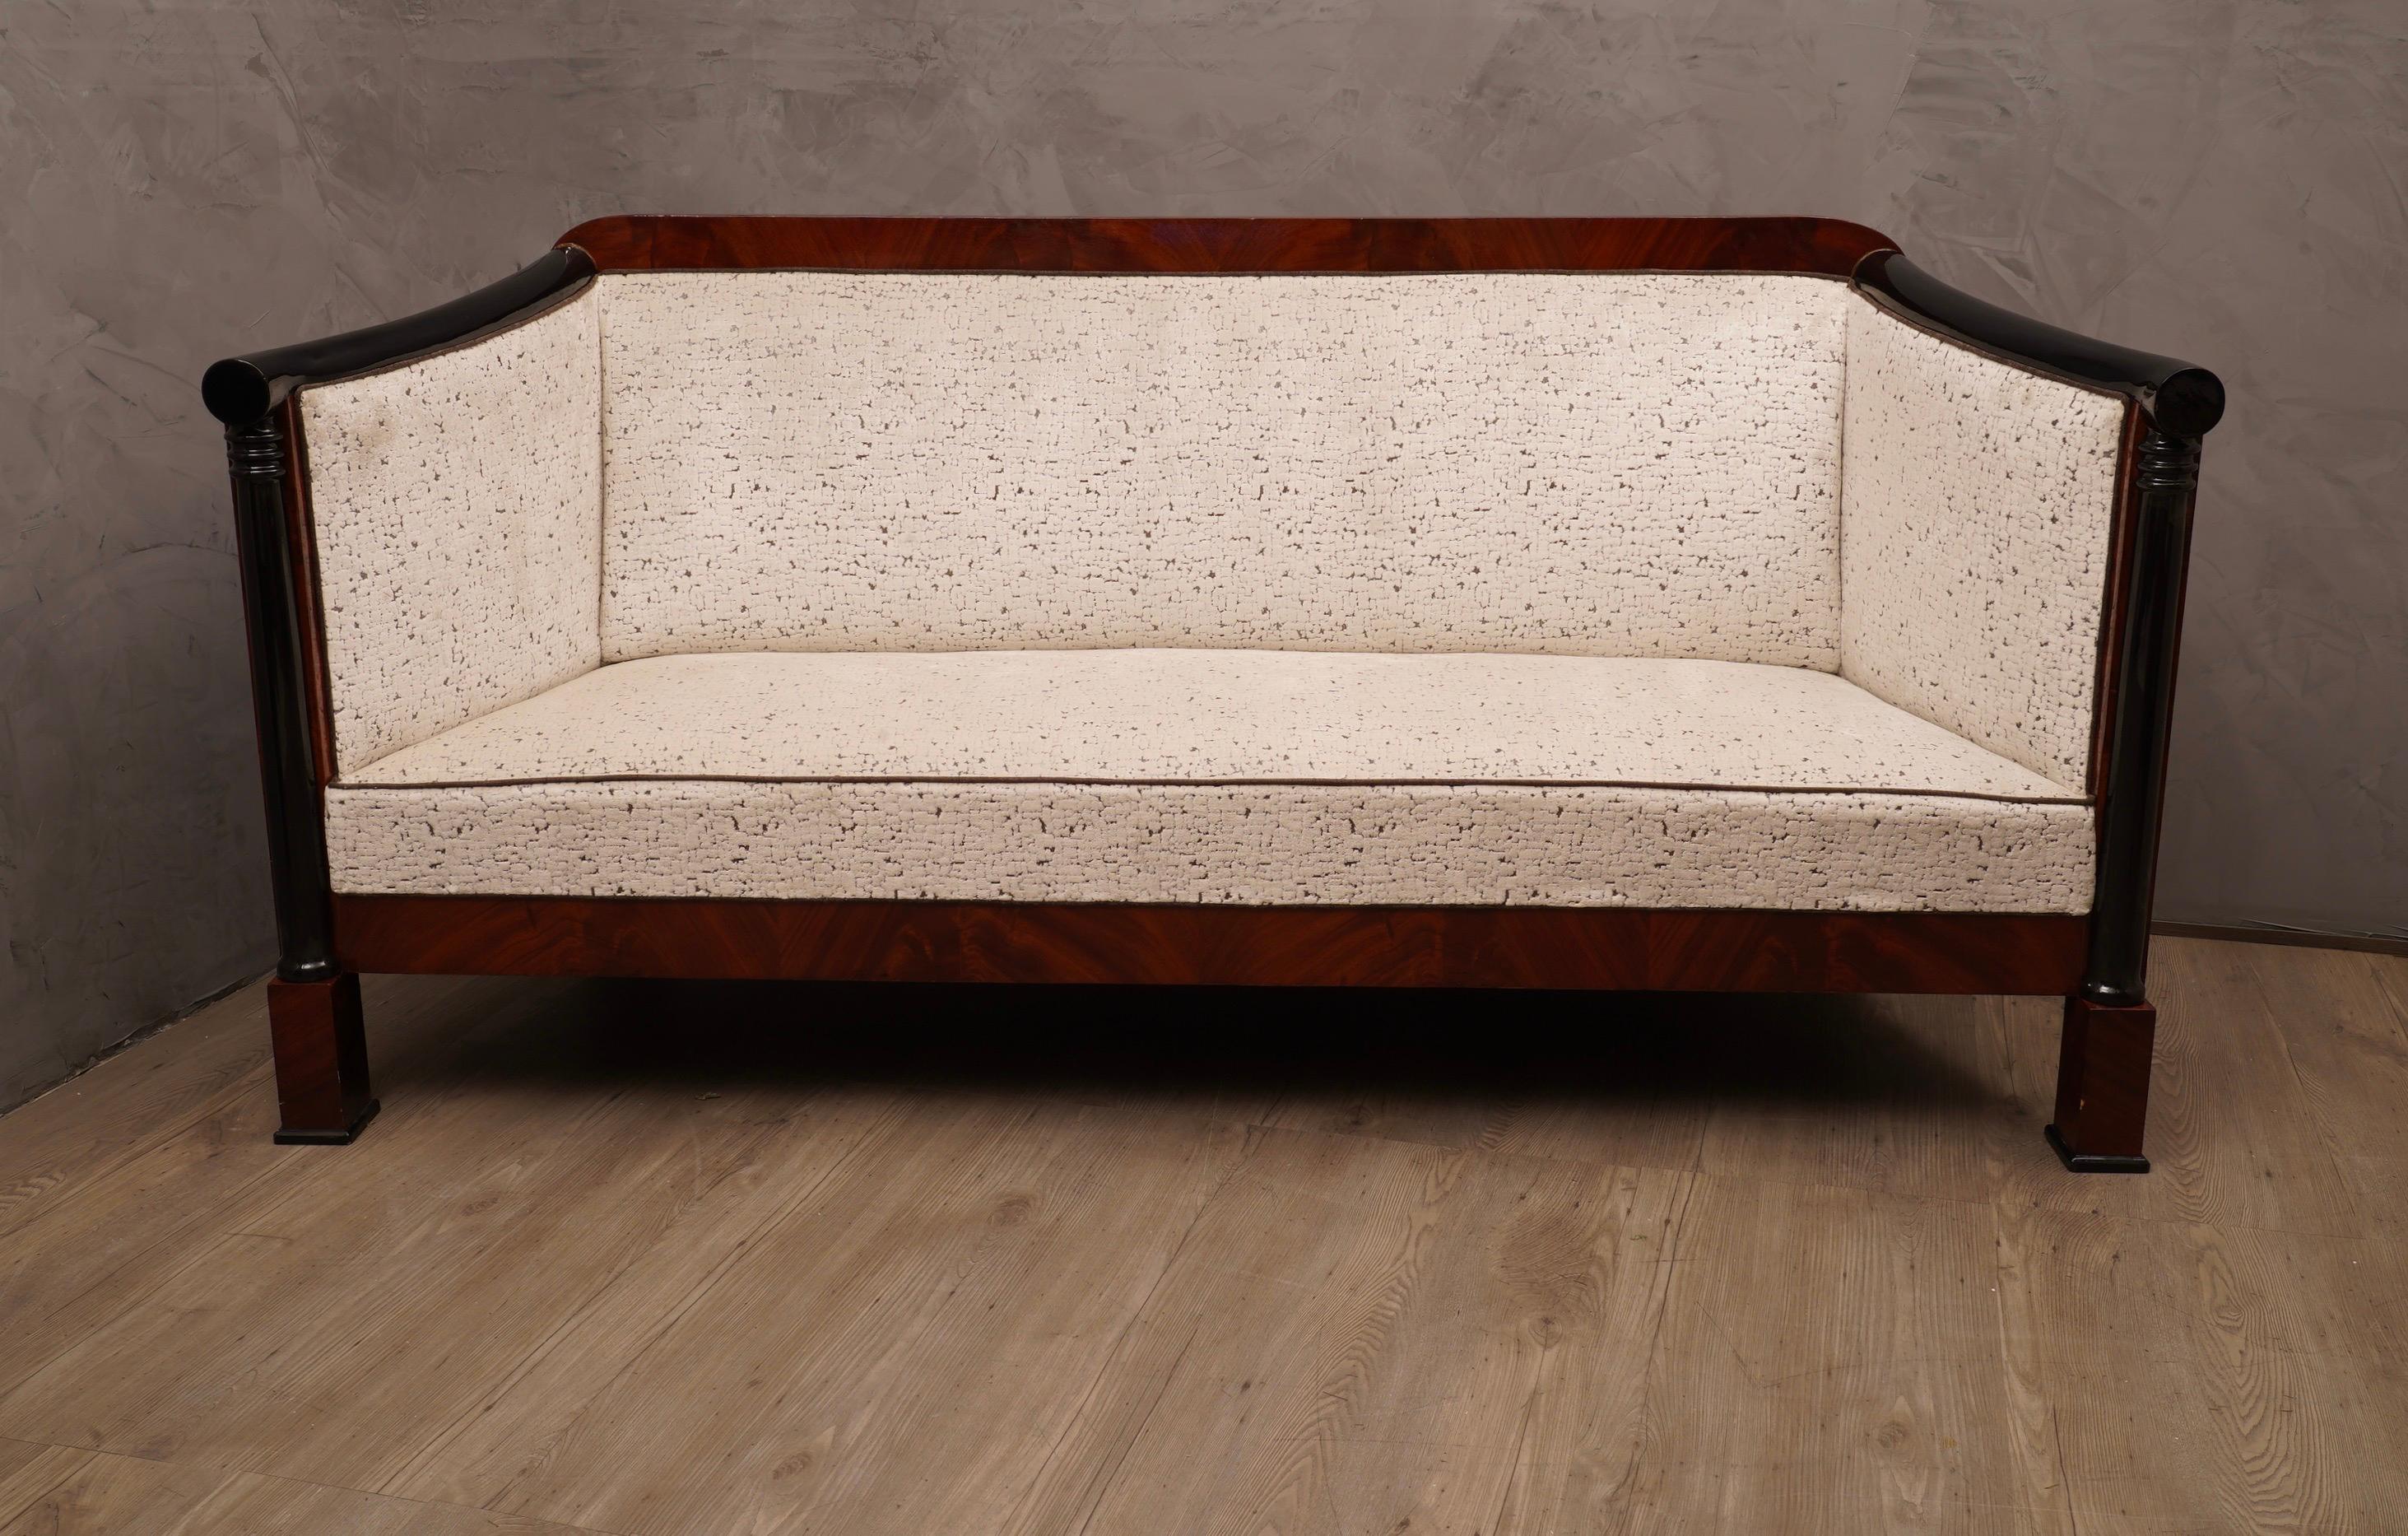 Superbe canapé en bois d'acajou très fin, son design est également précieux, recouvert d'un précieux velours blanc.

Le canapé a une structure en bois avec un placage en acajou, les deux accoudoirs comme vous pouvez le voir sur les photos, sont en